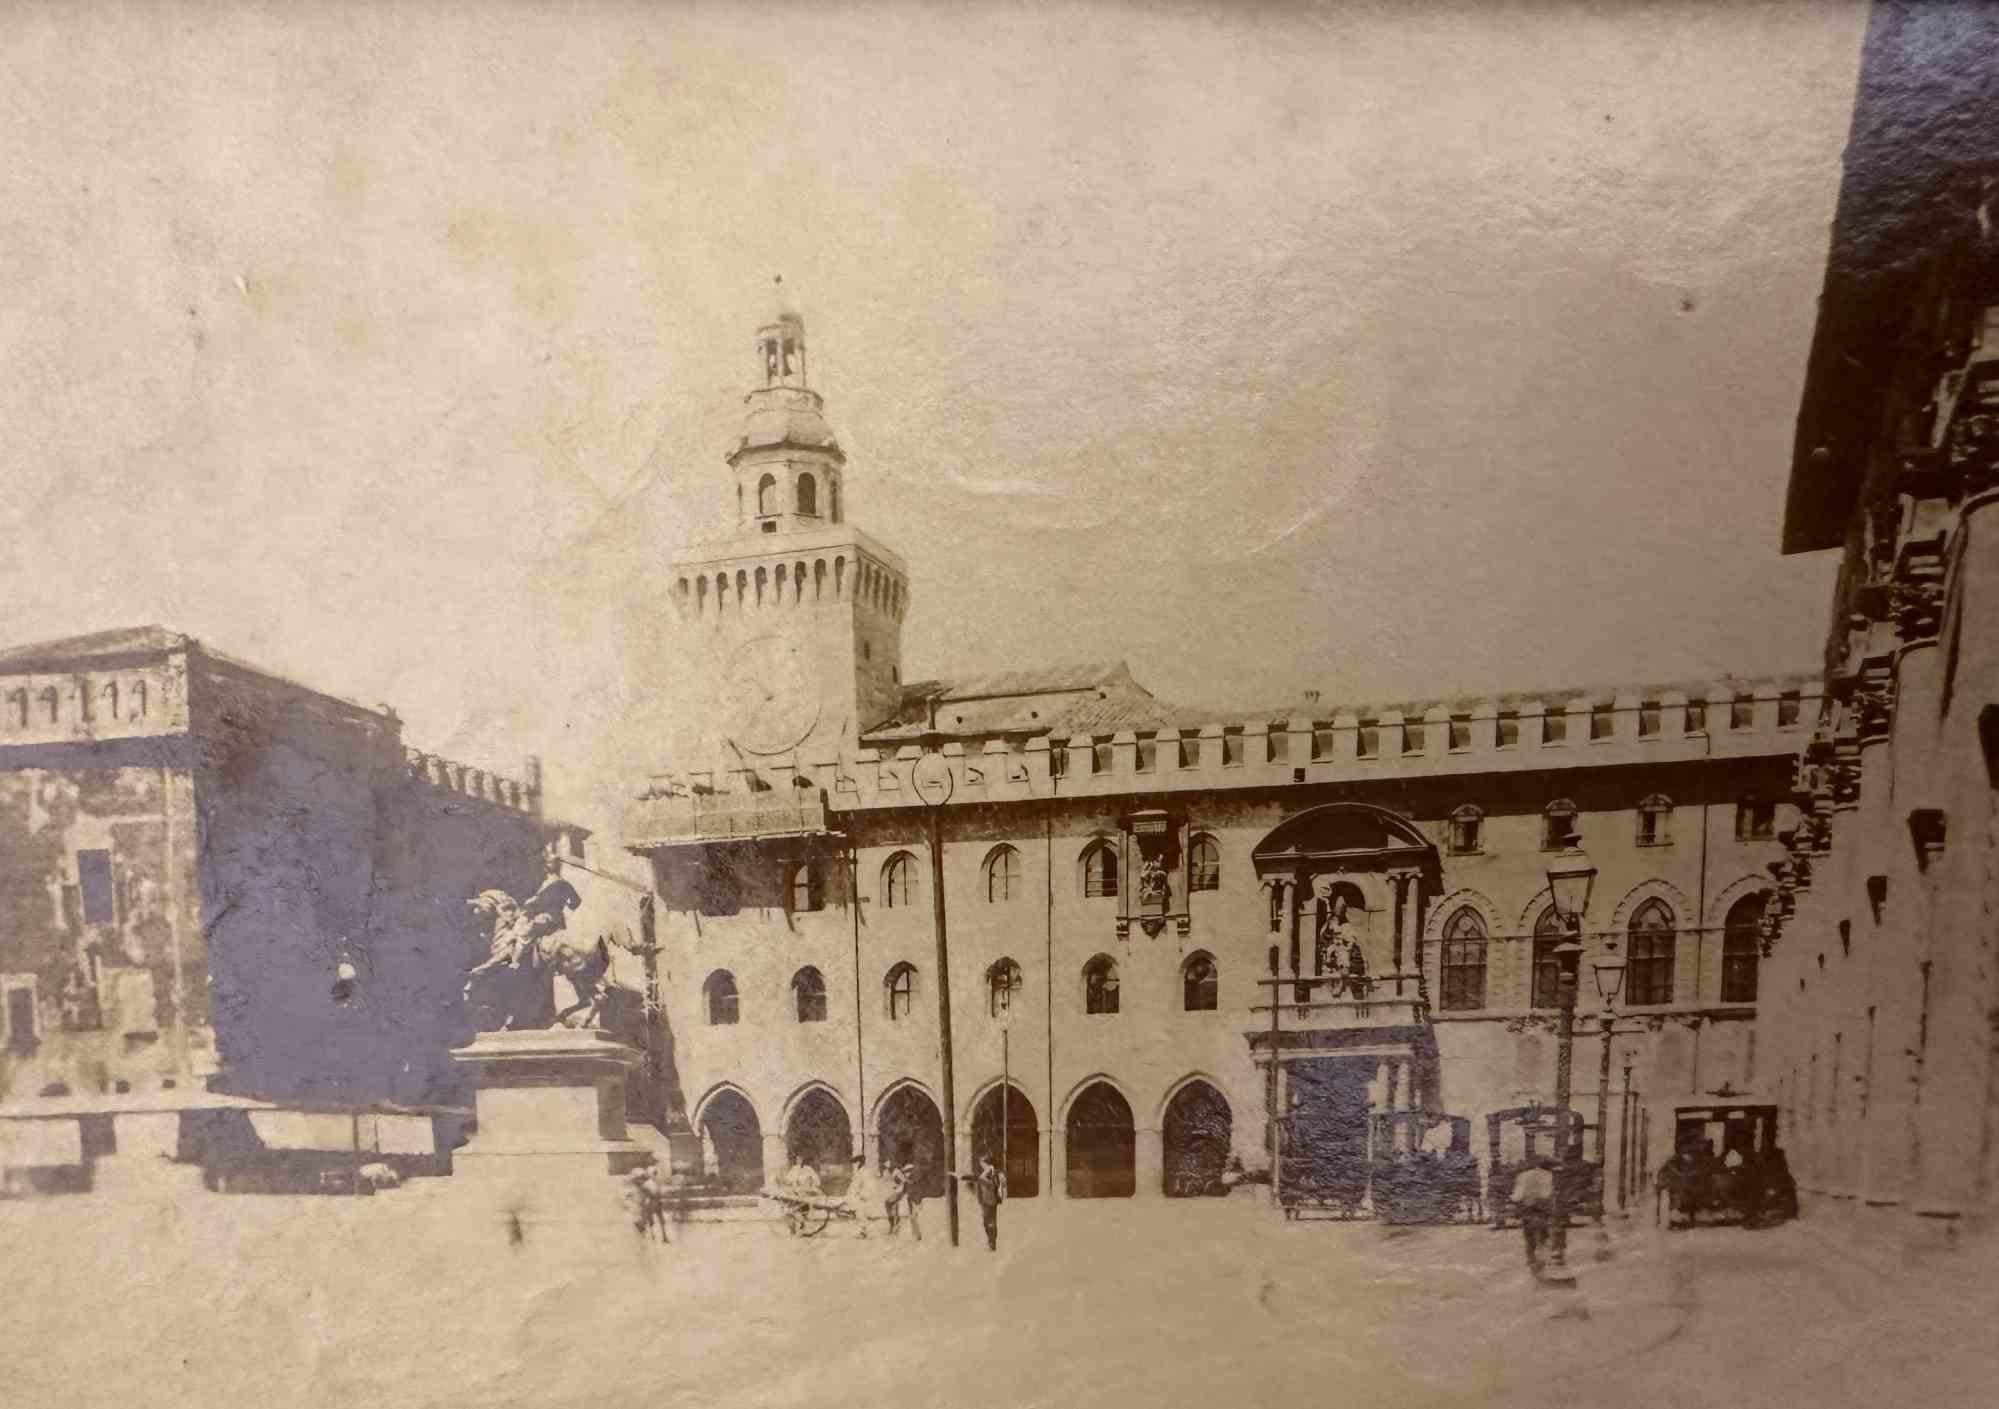 Figurative Photograph Unknown - The Old Days Photo - Piazza Vittorio Emanuele, Bologne - Début du 20e siècle